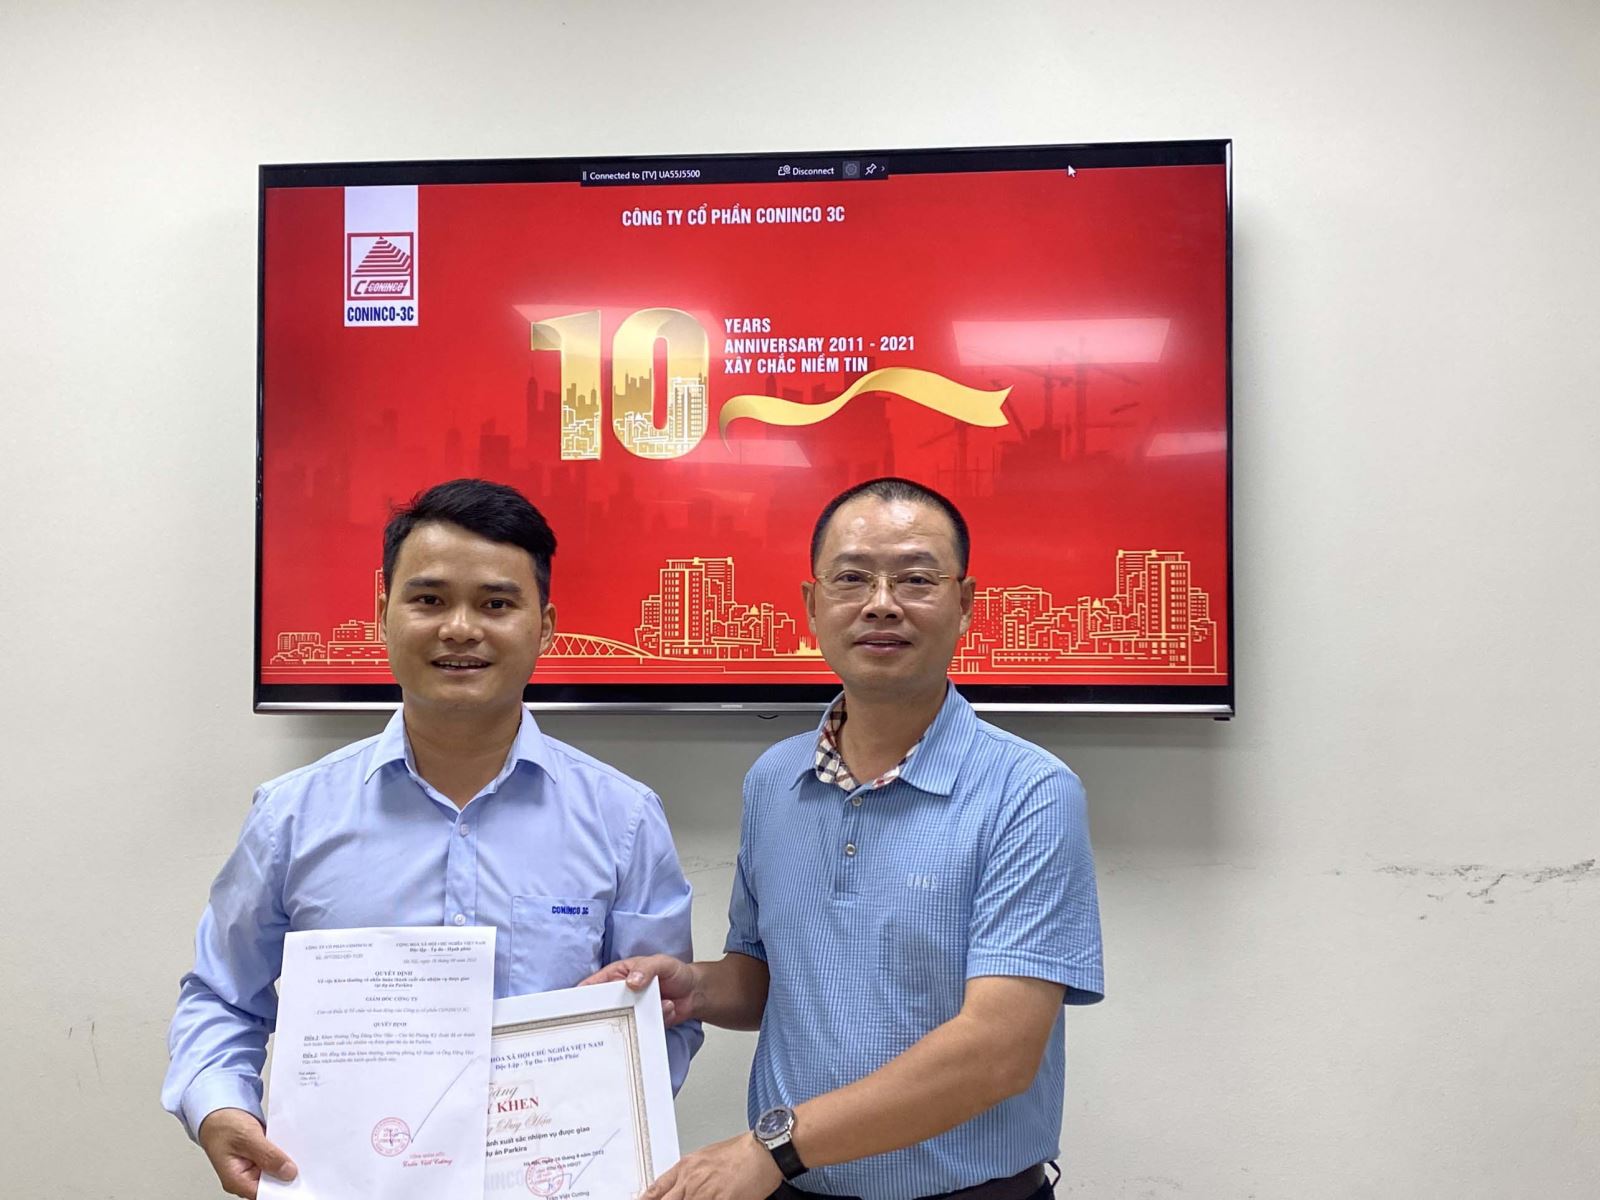 Tổng giám đốc Trần Việt Cường tặng đồng chí Hậu Quyết định và Bằng khen của Công ty